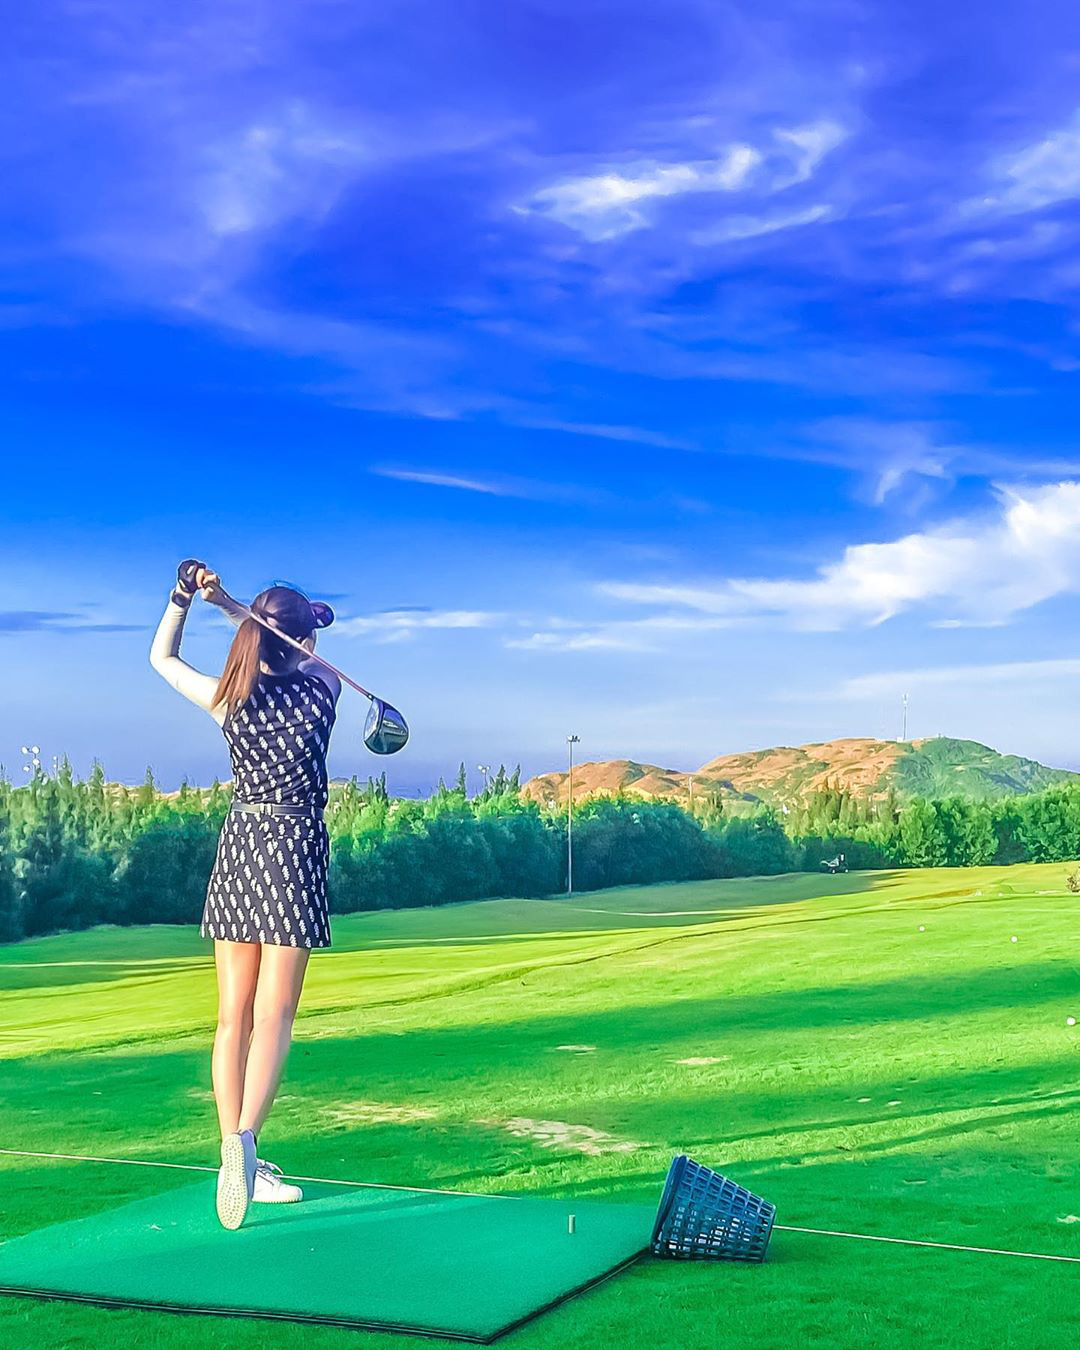 Đánh golf là một trải nghiệm thú vị cho những người yêu thích thể thao. Cùng khám phá những cú đánh tuyệt vời trong hình ảnh đầy màu sắc và sống động này.